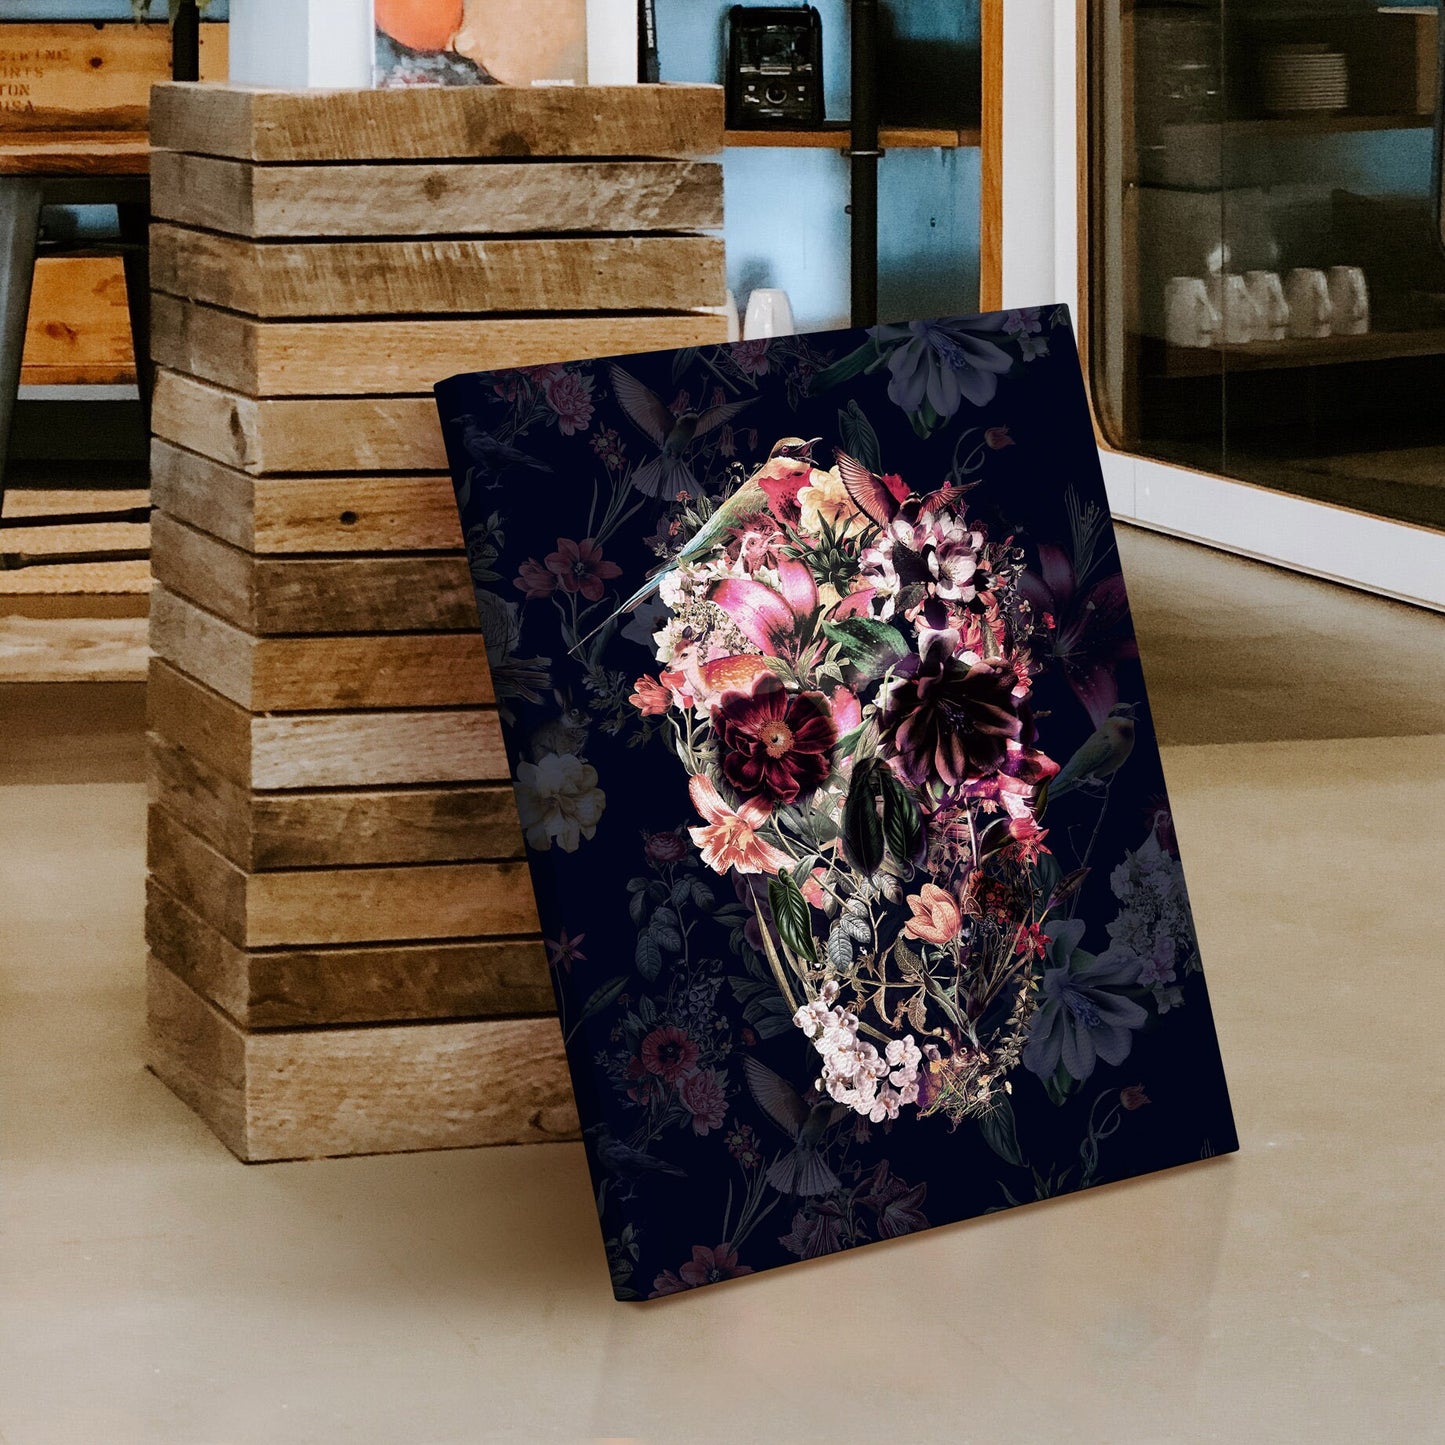 Dark Floral Canvas Print, Flower Skull Canvas Art Print, Boho Skull Canvas Art, Sugar Skull Home Decor Gift